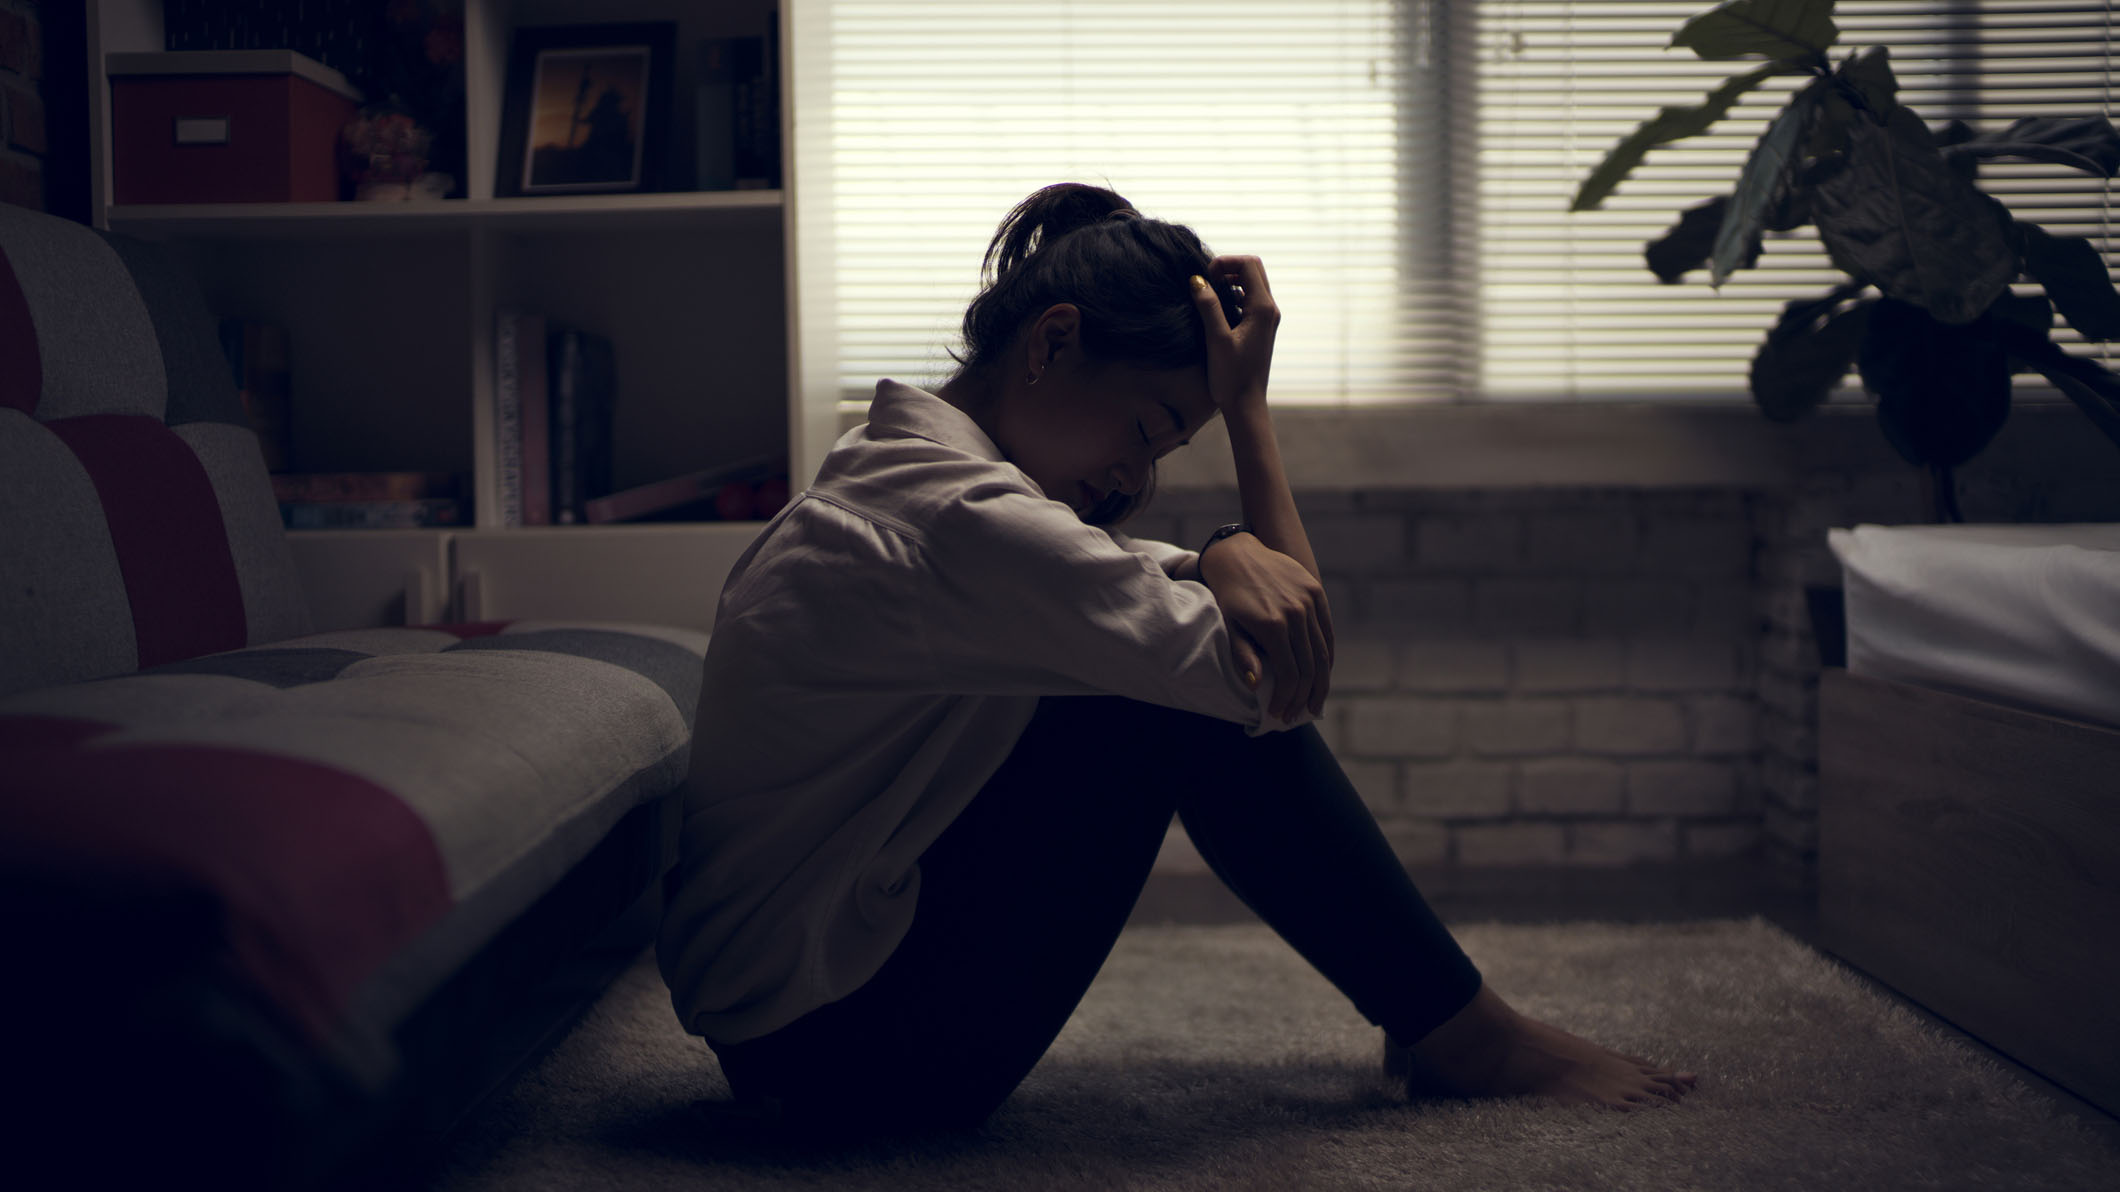 Tytöillä diagnosoidaan masennusta puolet enemmän kuin pojilla.